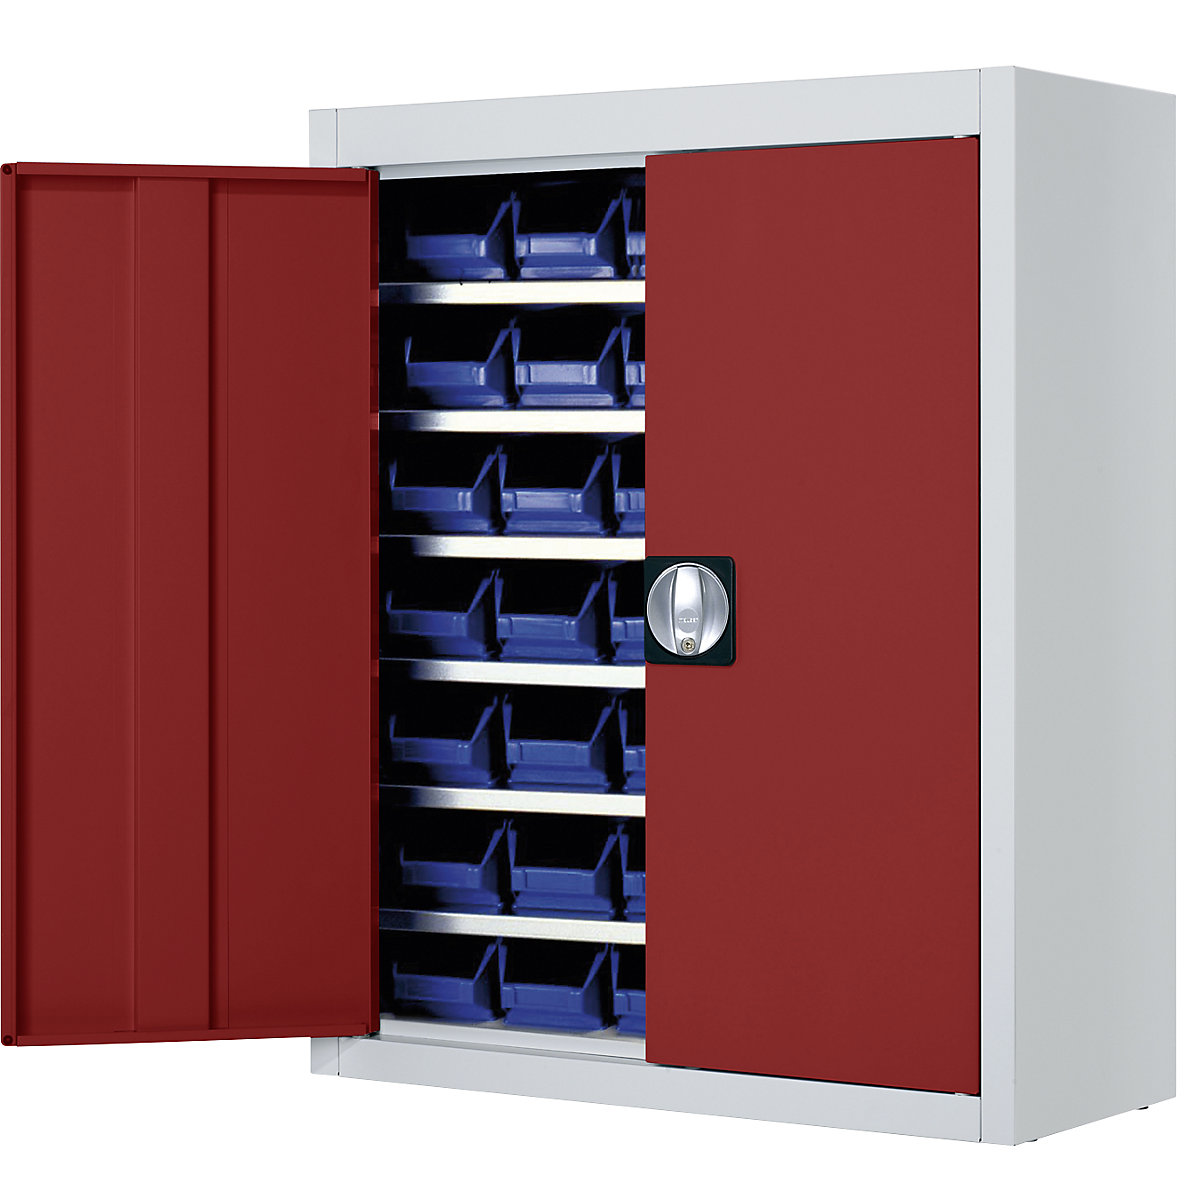 Skladová skříň s přepravkami s viditelným obsahem – mauser, v x š x h 820 x 680 x 280 mm, dvoubarevné, korpus šedý, dveře červené, 42 přepravek, od 3 ks-6